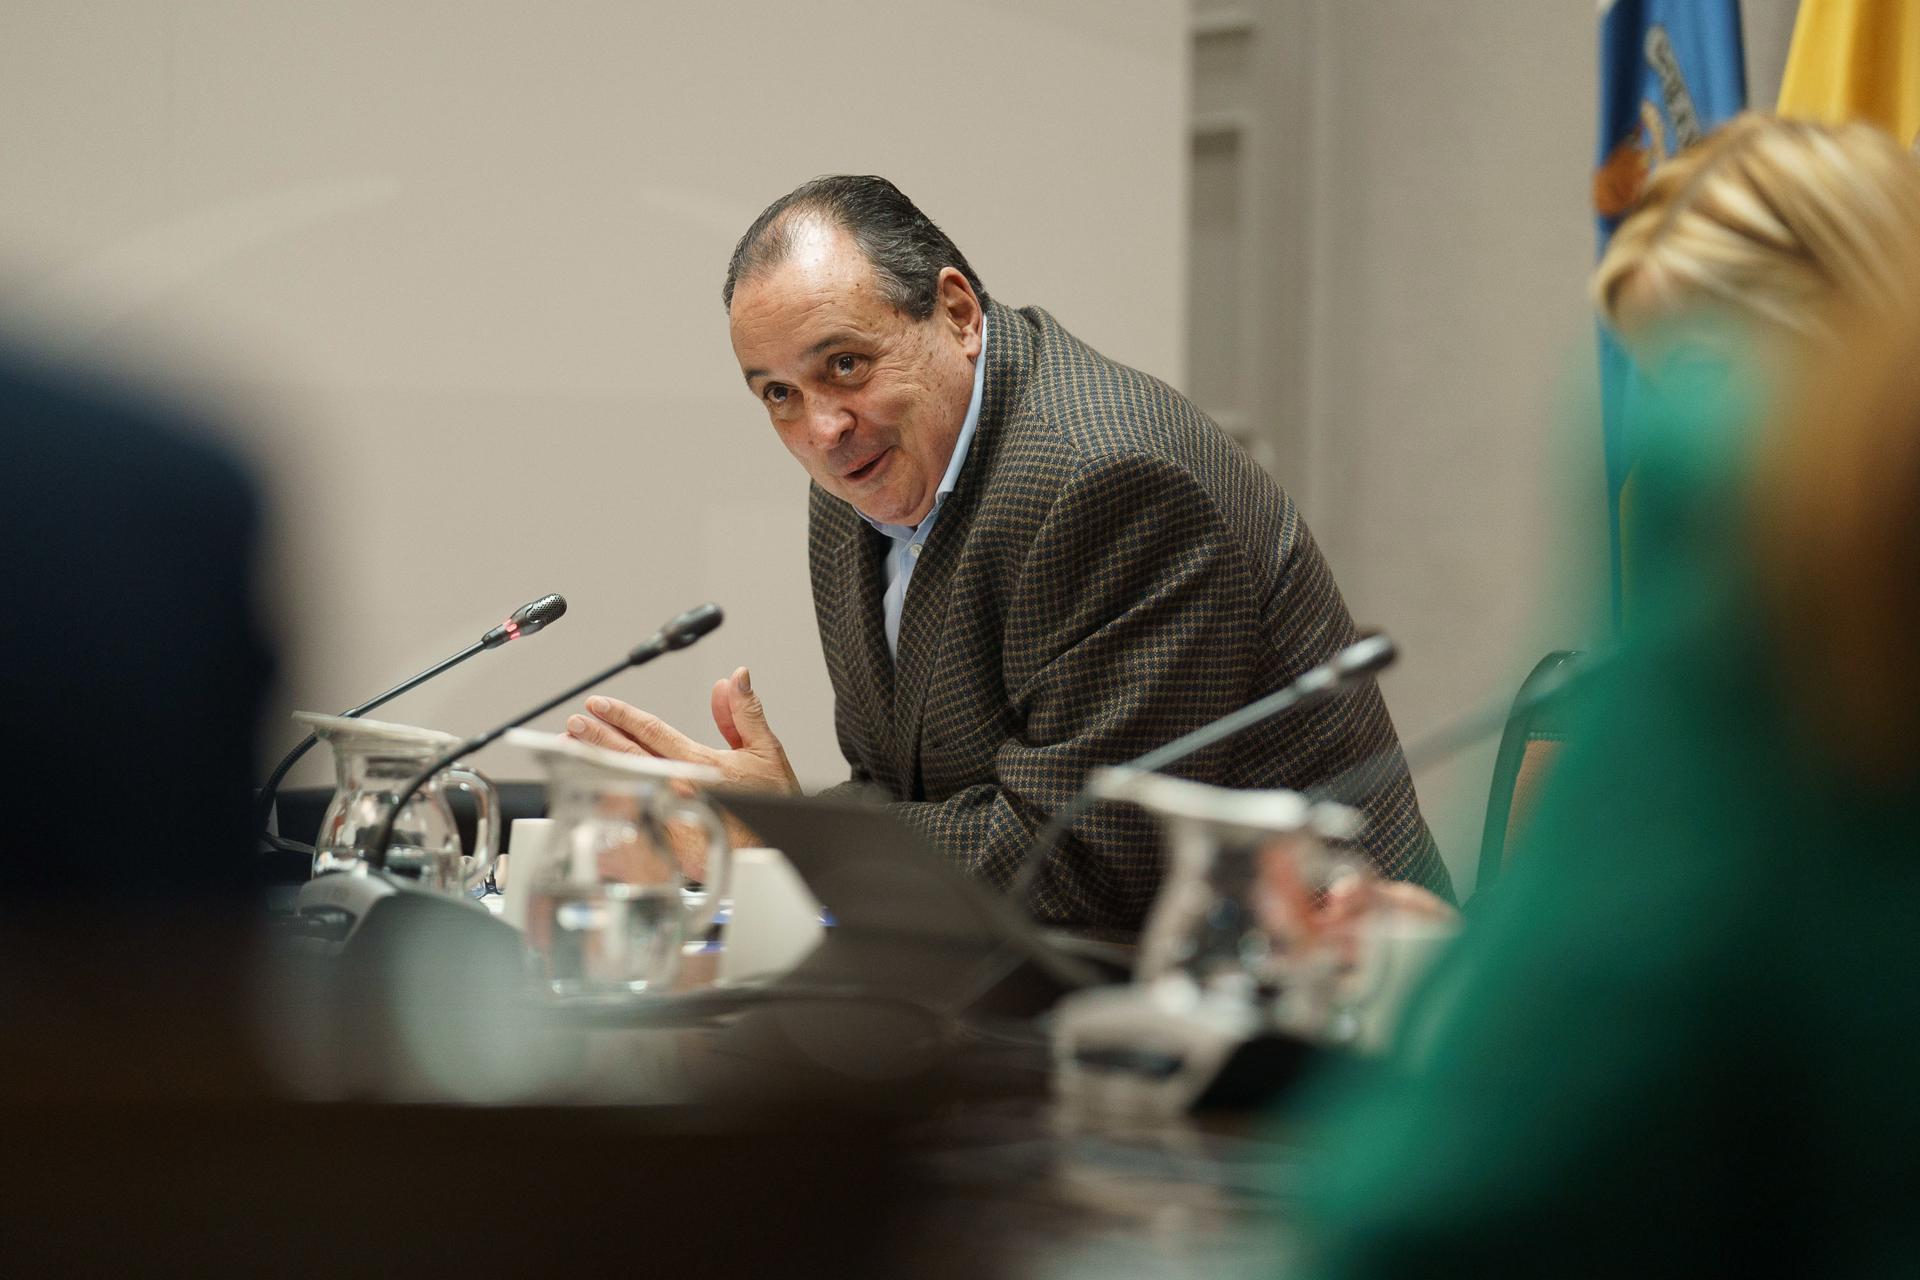 El consejero de Sanidad del Gobierno de Canarias, Blas Trujillo, compareció este lunes en la comisión de Sanidad del Parlamento de Canarias. EFE/Ramón de la Rocha